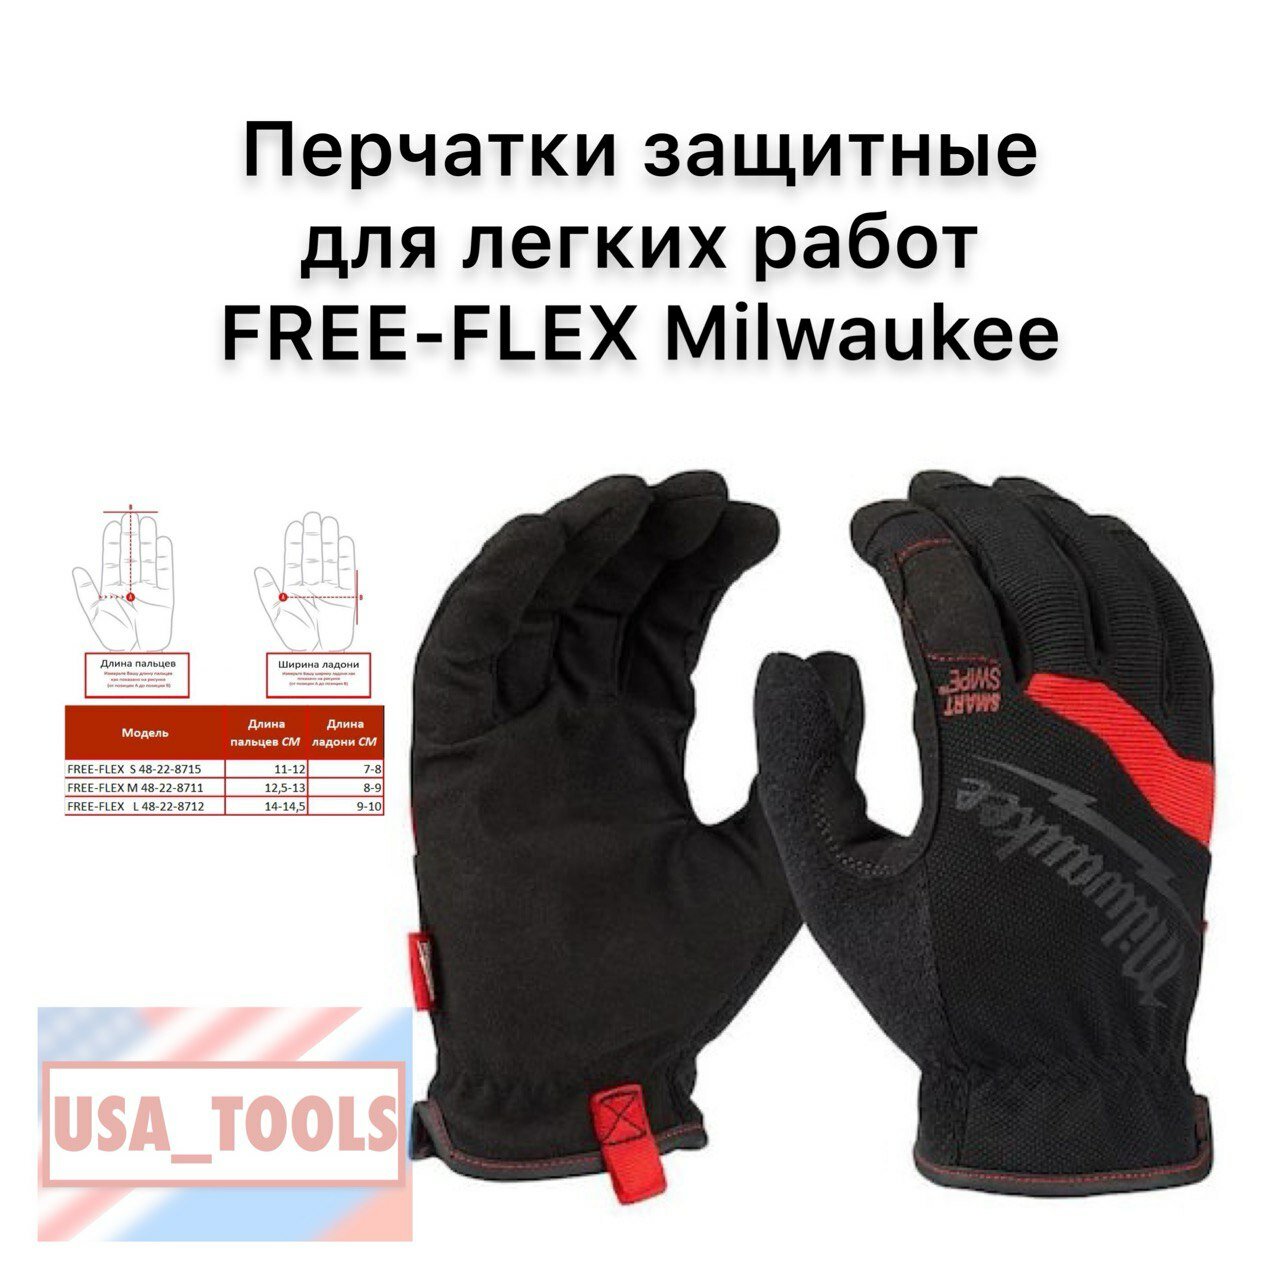 Перчатки защитные для легких работ FREE-FLEX размер M Milwaukee 48-22-8711